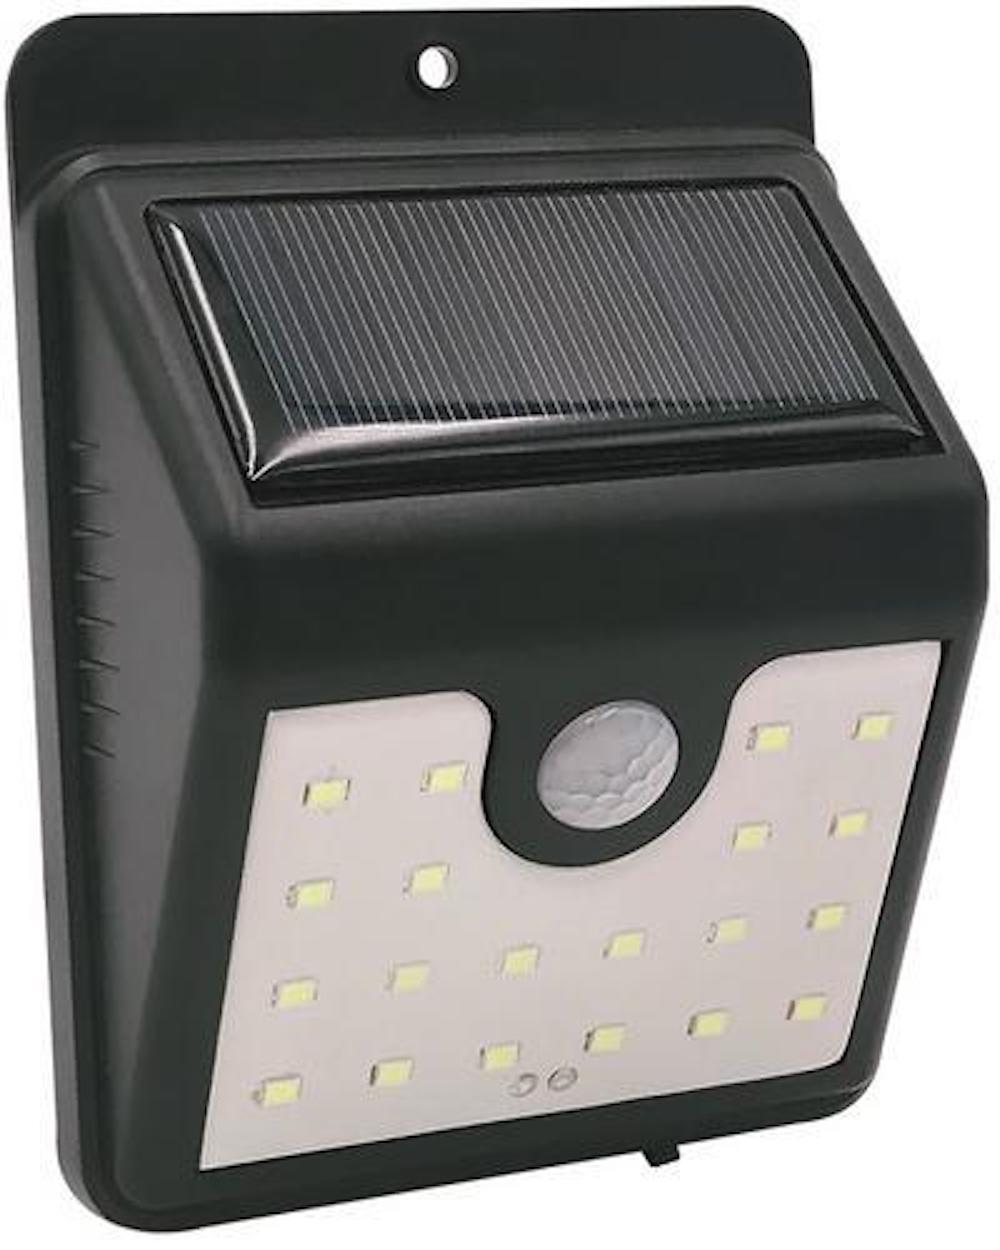 SuperSparSet 5x BERLIN Solarlampe mit automatischer Einschaltfunktion | HxBxT 9x4,5x11,5cm | 20 LEDs | Automatisches Schalten | Bewegungssensor | Gartenlampe, Rattanlampe